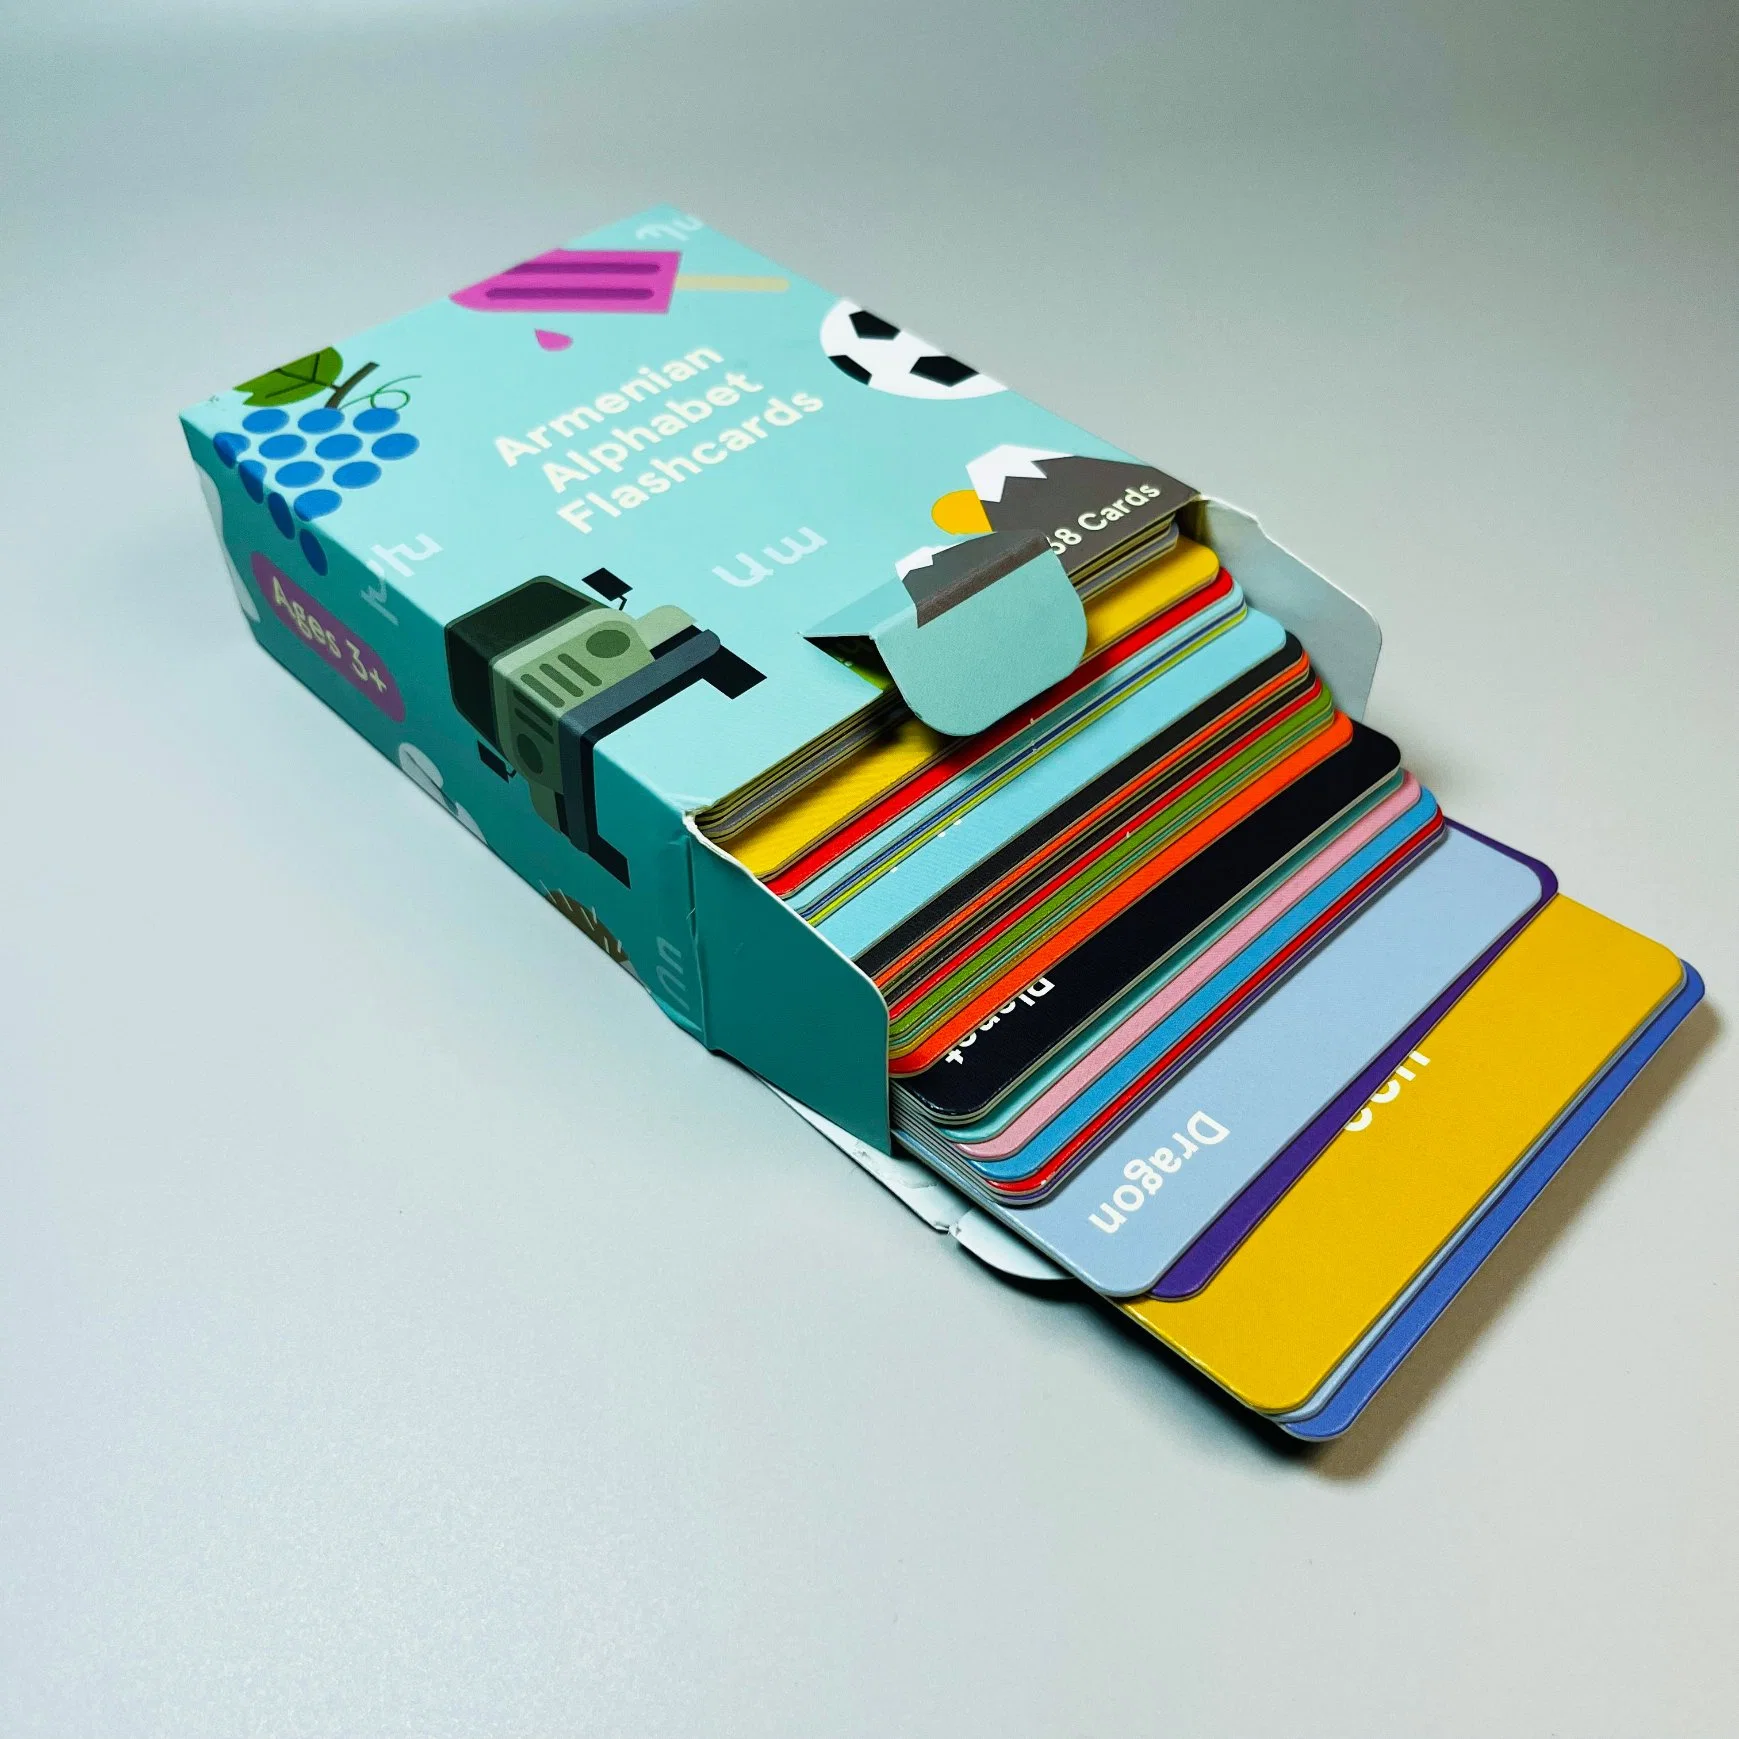 Tarjeta de papel Flash personalizada Impresión de Tarjetas de juego para niños Los niños adultos juegos de cartas de Juguetes y Juegos de Puzzles Personalizados Tarjeta de papel de la Tarjeta Regalo Servicio de OEM/ODM